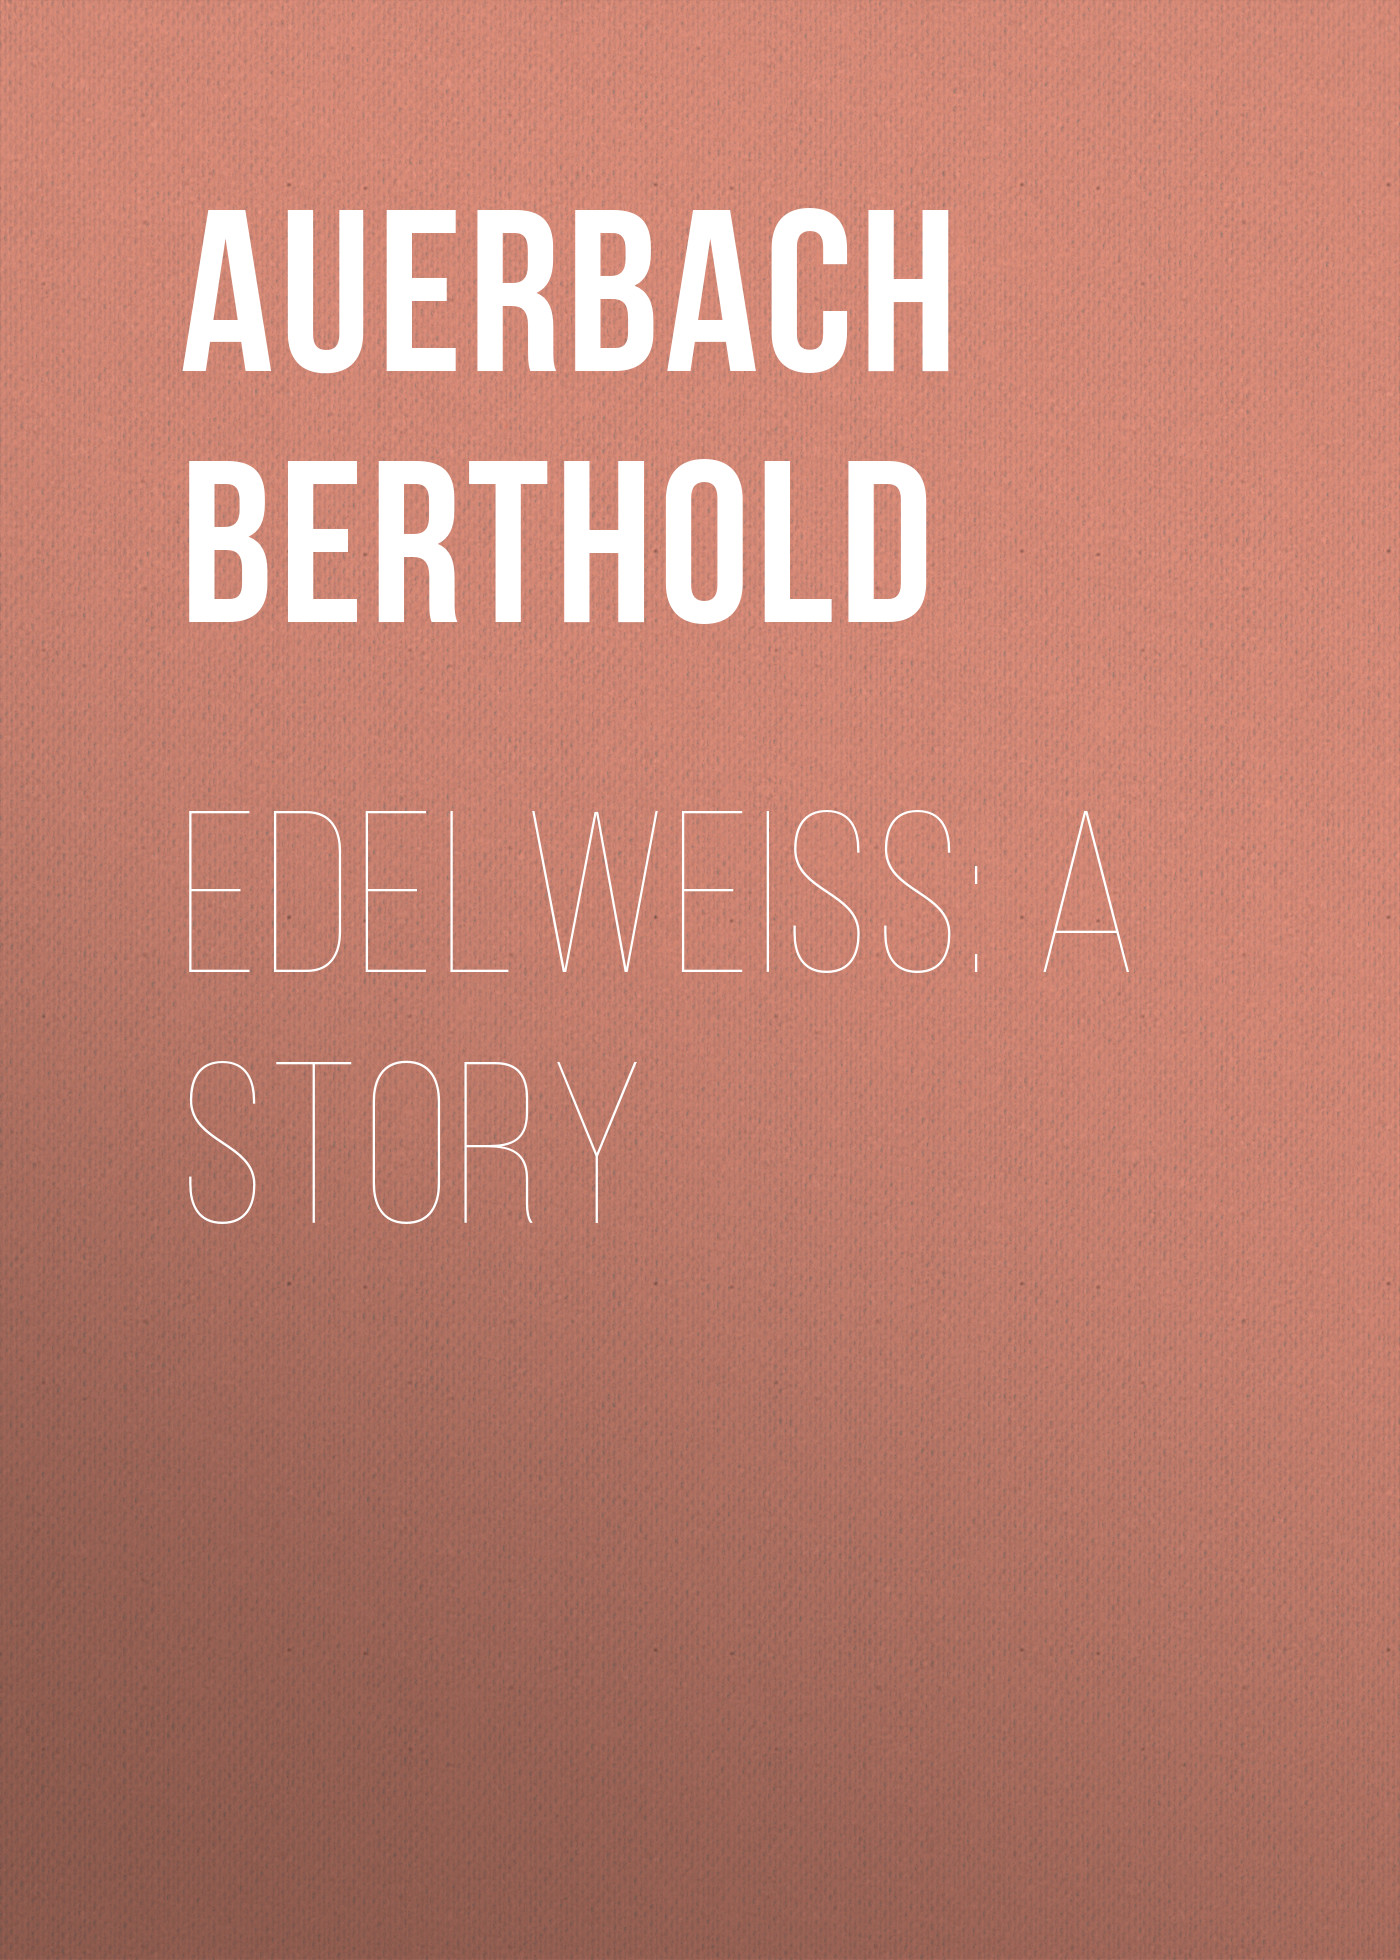 Книга Edelweiss: A Story из серии , созданная Berthold Auerbach, может относится к жанру Зарубежная старинная литература, Зарубежная классика. Стоимость электронной книги Edelweiss: A Story с идентификатором 24176596 составляет 0 руб.